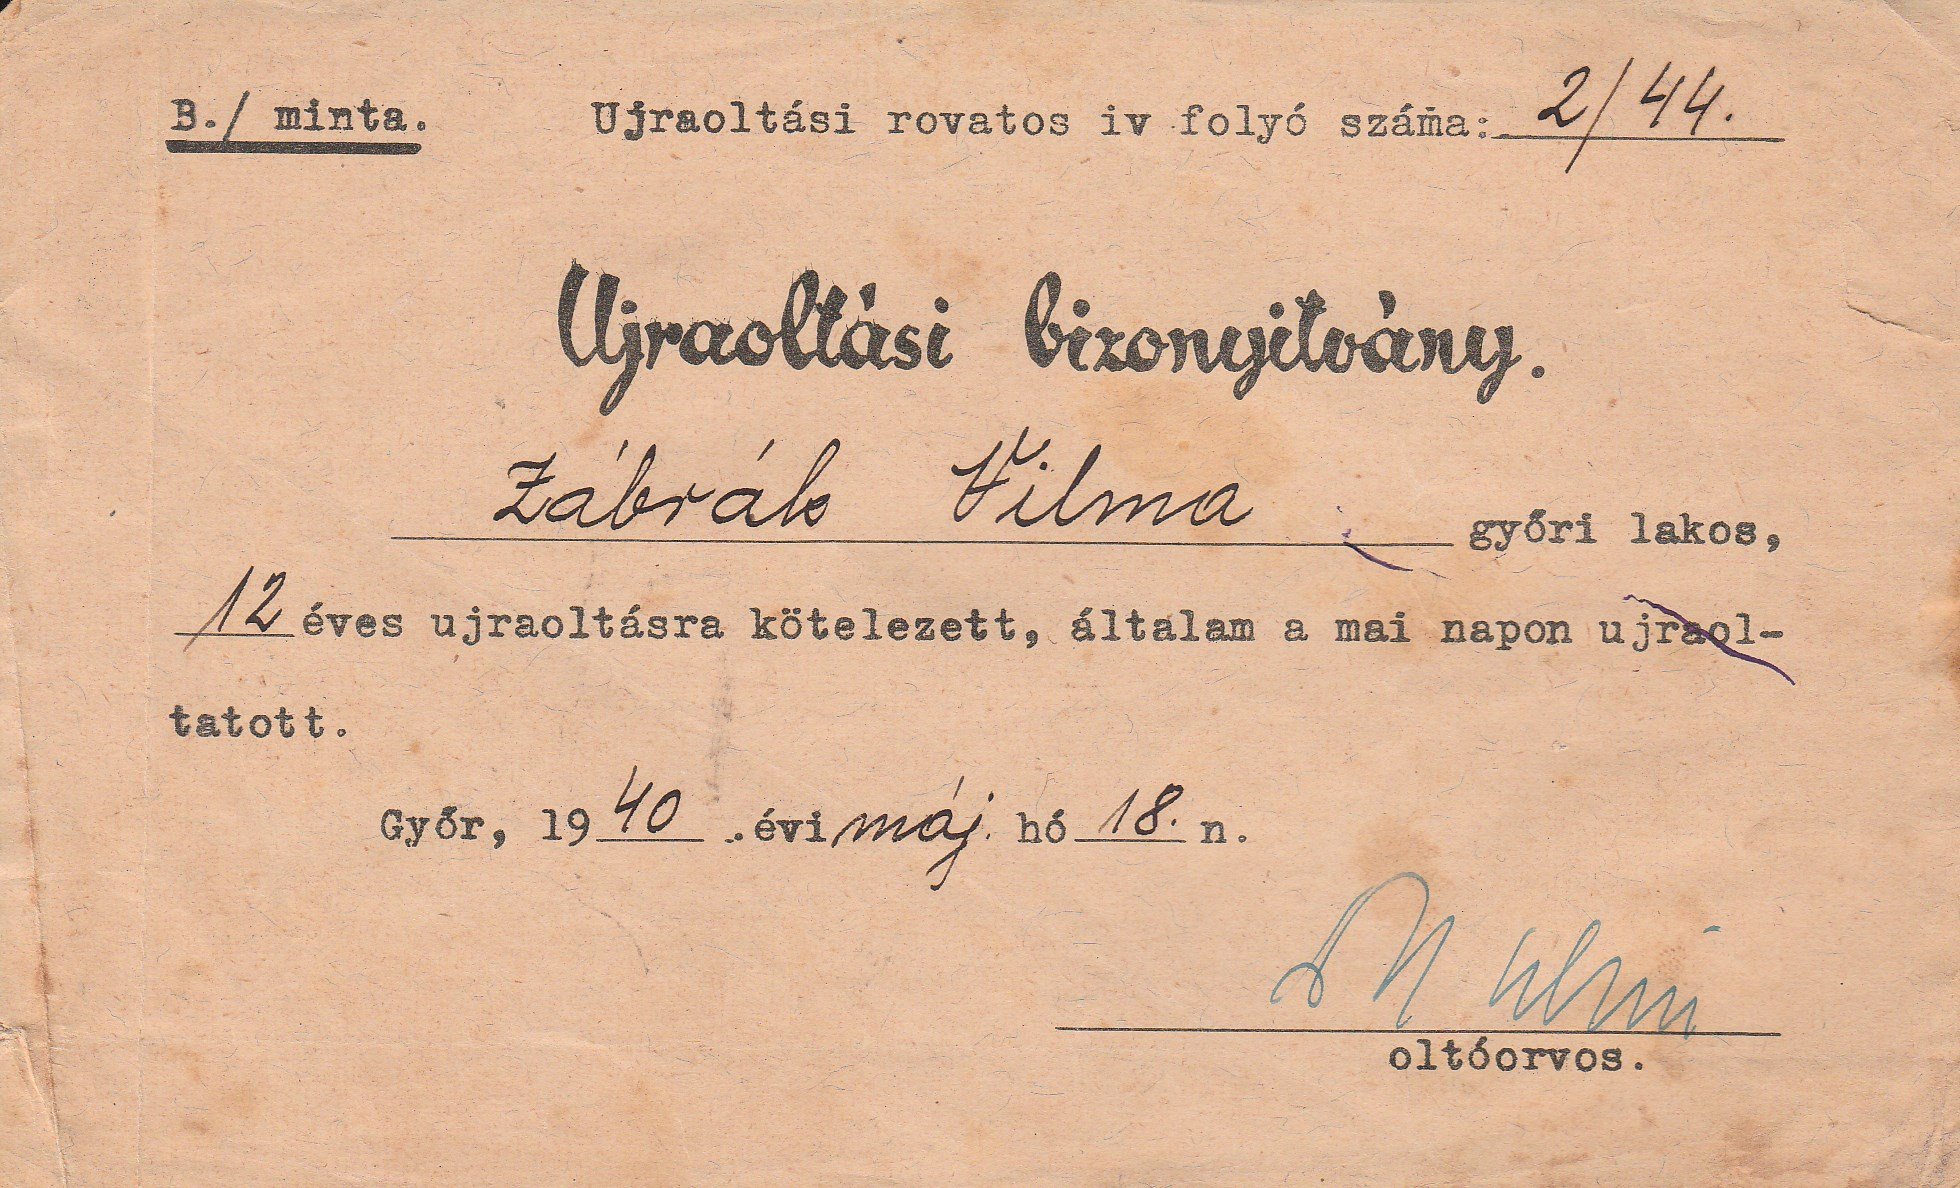 Zábrák Vilma oltási igazolása 1940-ből (Tapolcai Városi Múzeum CC BY-NC-SA)